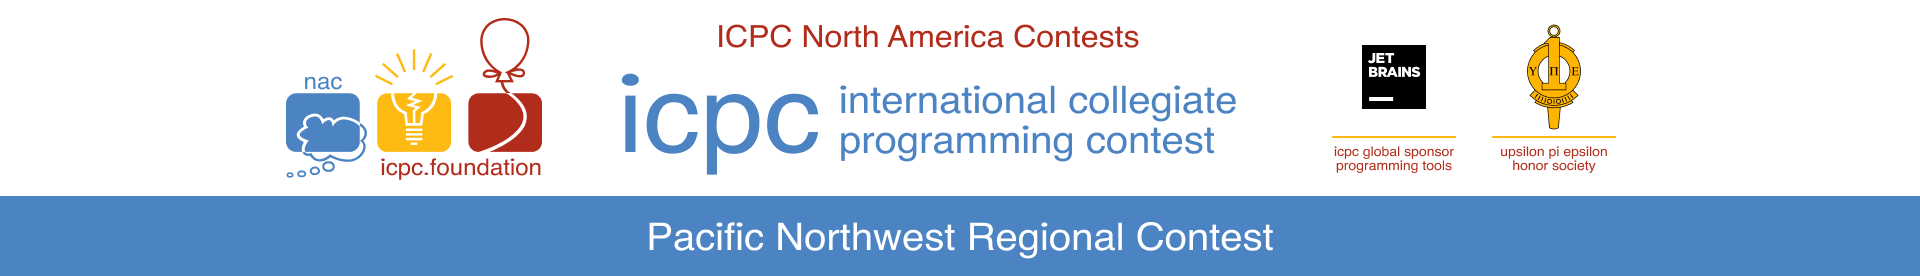 ICPC Pacific Northwest Regional Contest logo